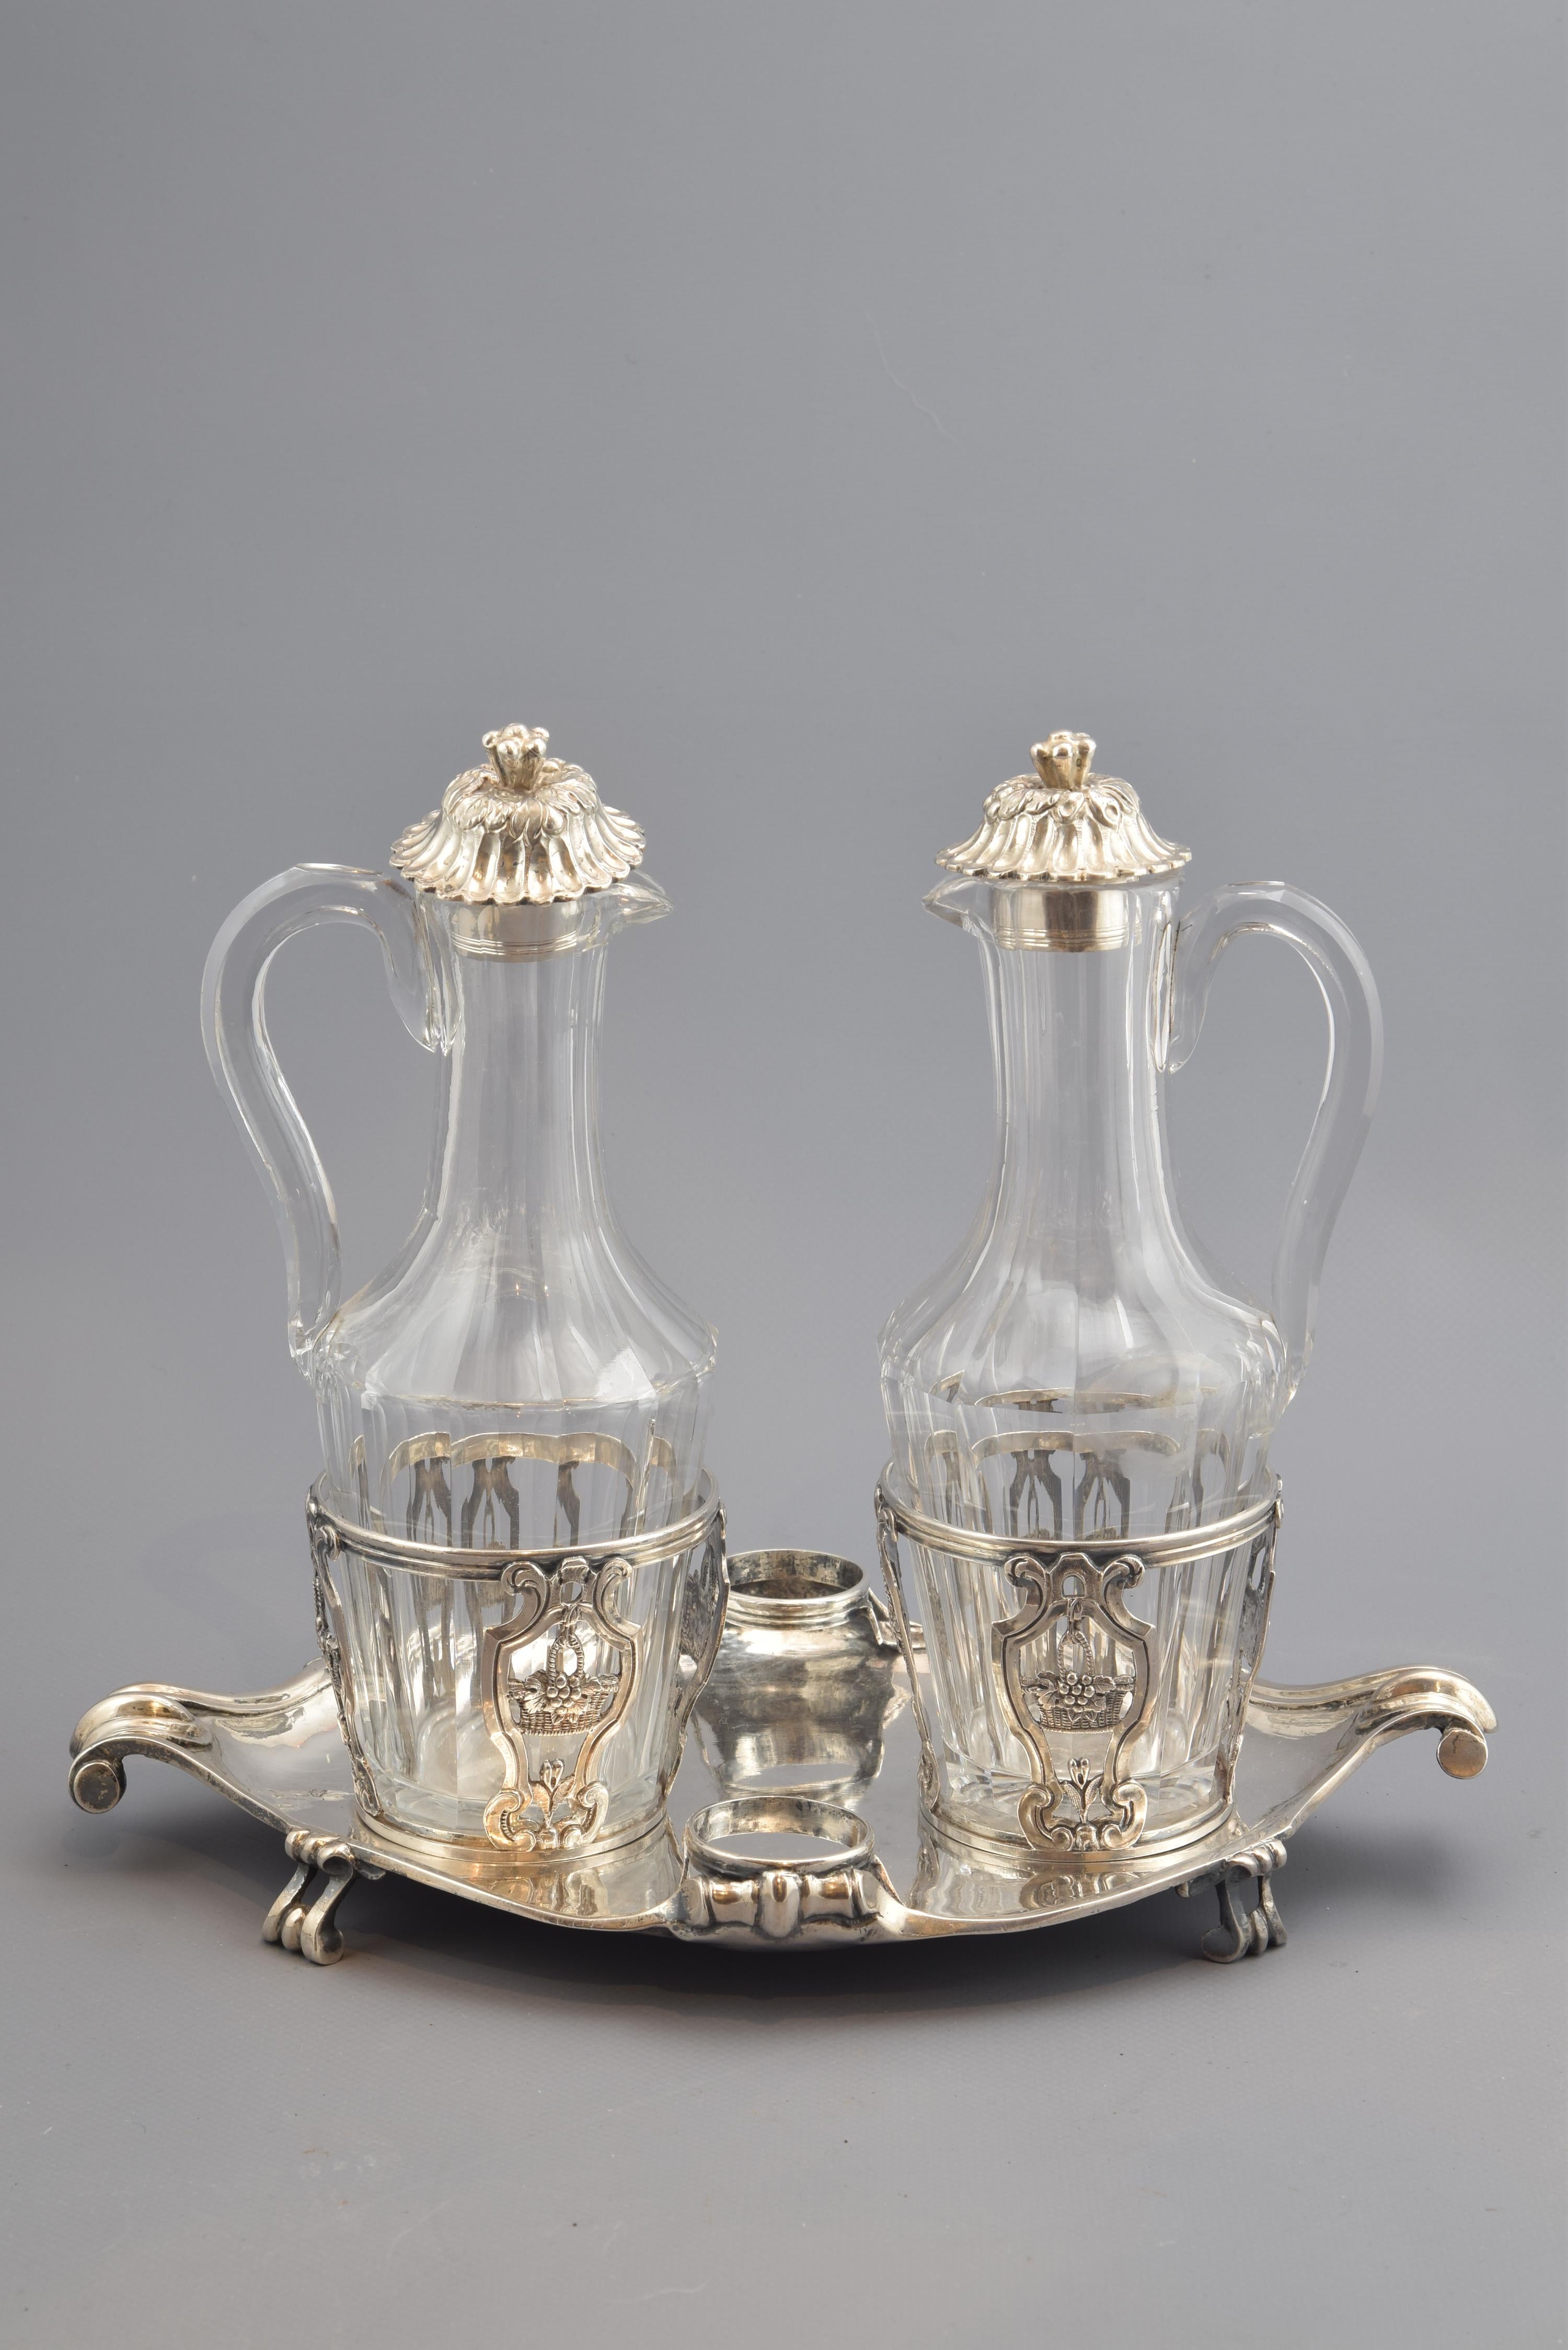 Cruet Set, Silver, Glass, René-Pierre Ferrier, Paris, France, 1775 For Sale 1